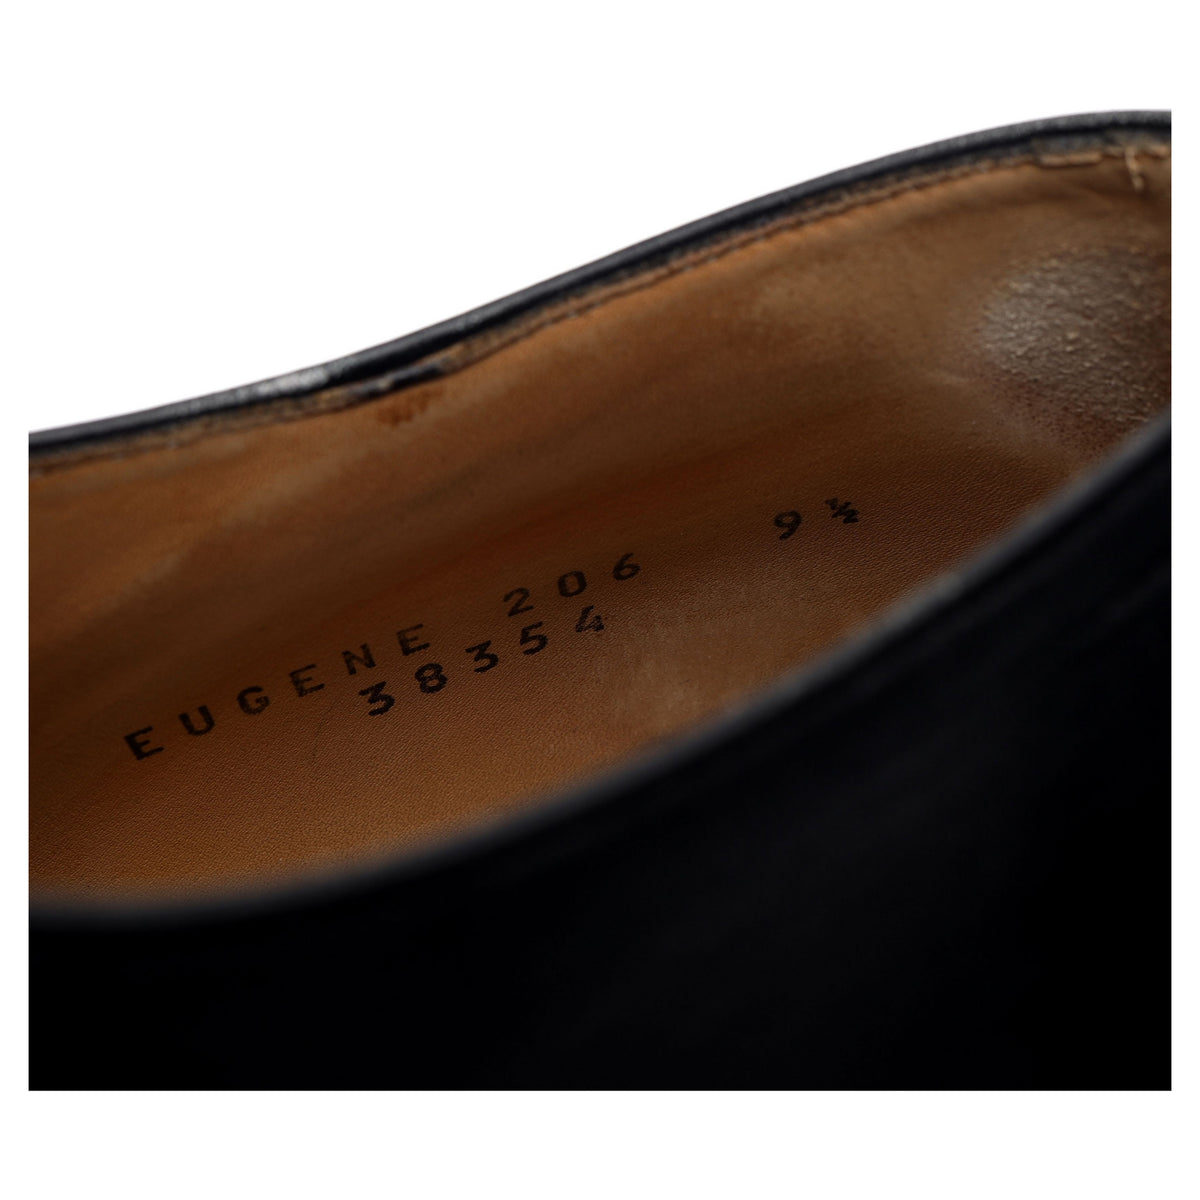 &#39;Eugene&#39; Black Leather Oxford UK 9.5